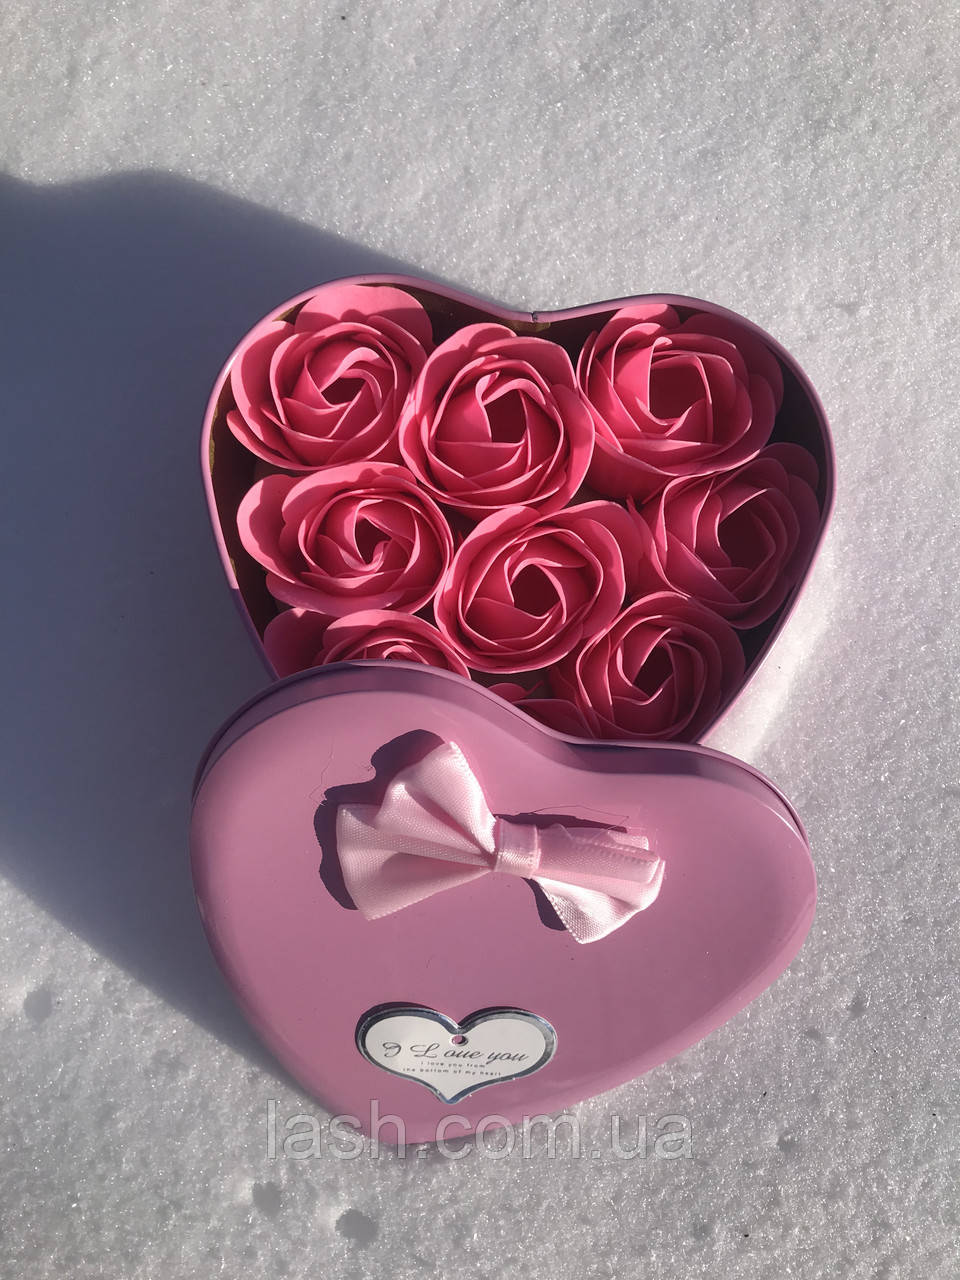 Подарунковий набір мила у формі бутона троянди з плюшевим ведмедиком (12 троянд)